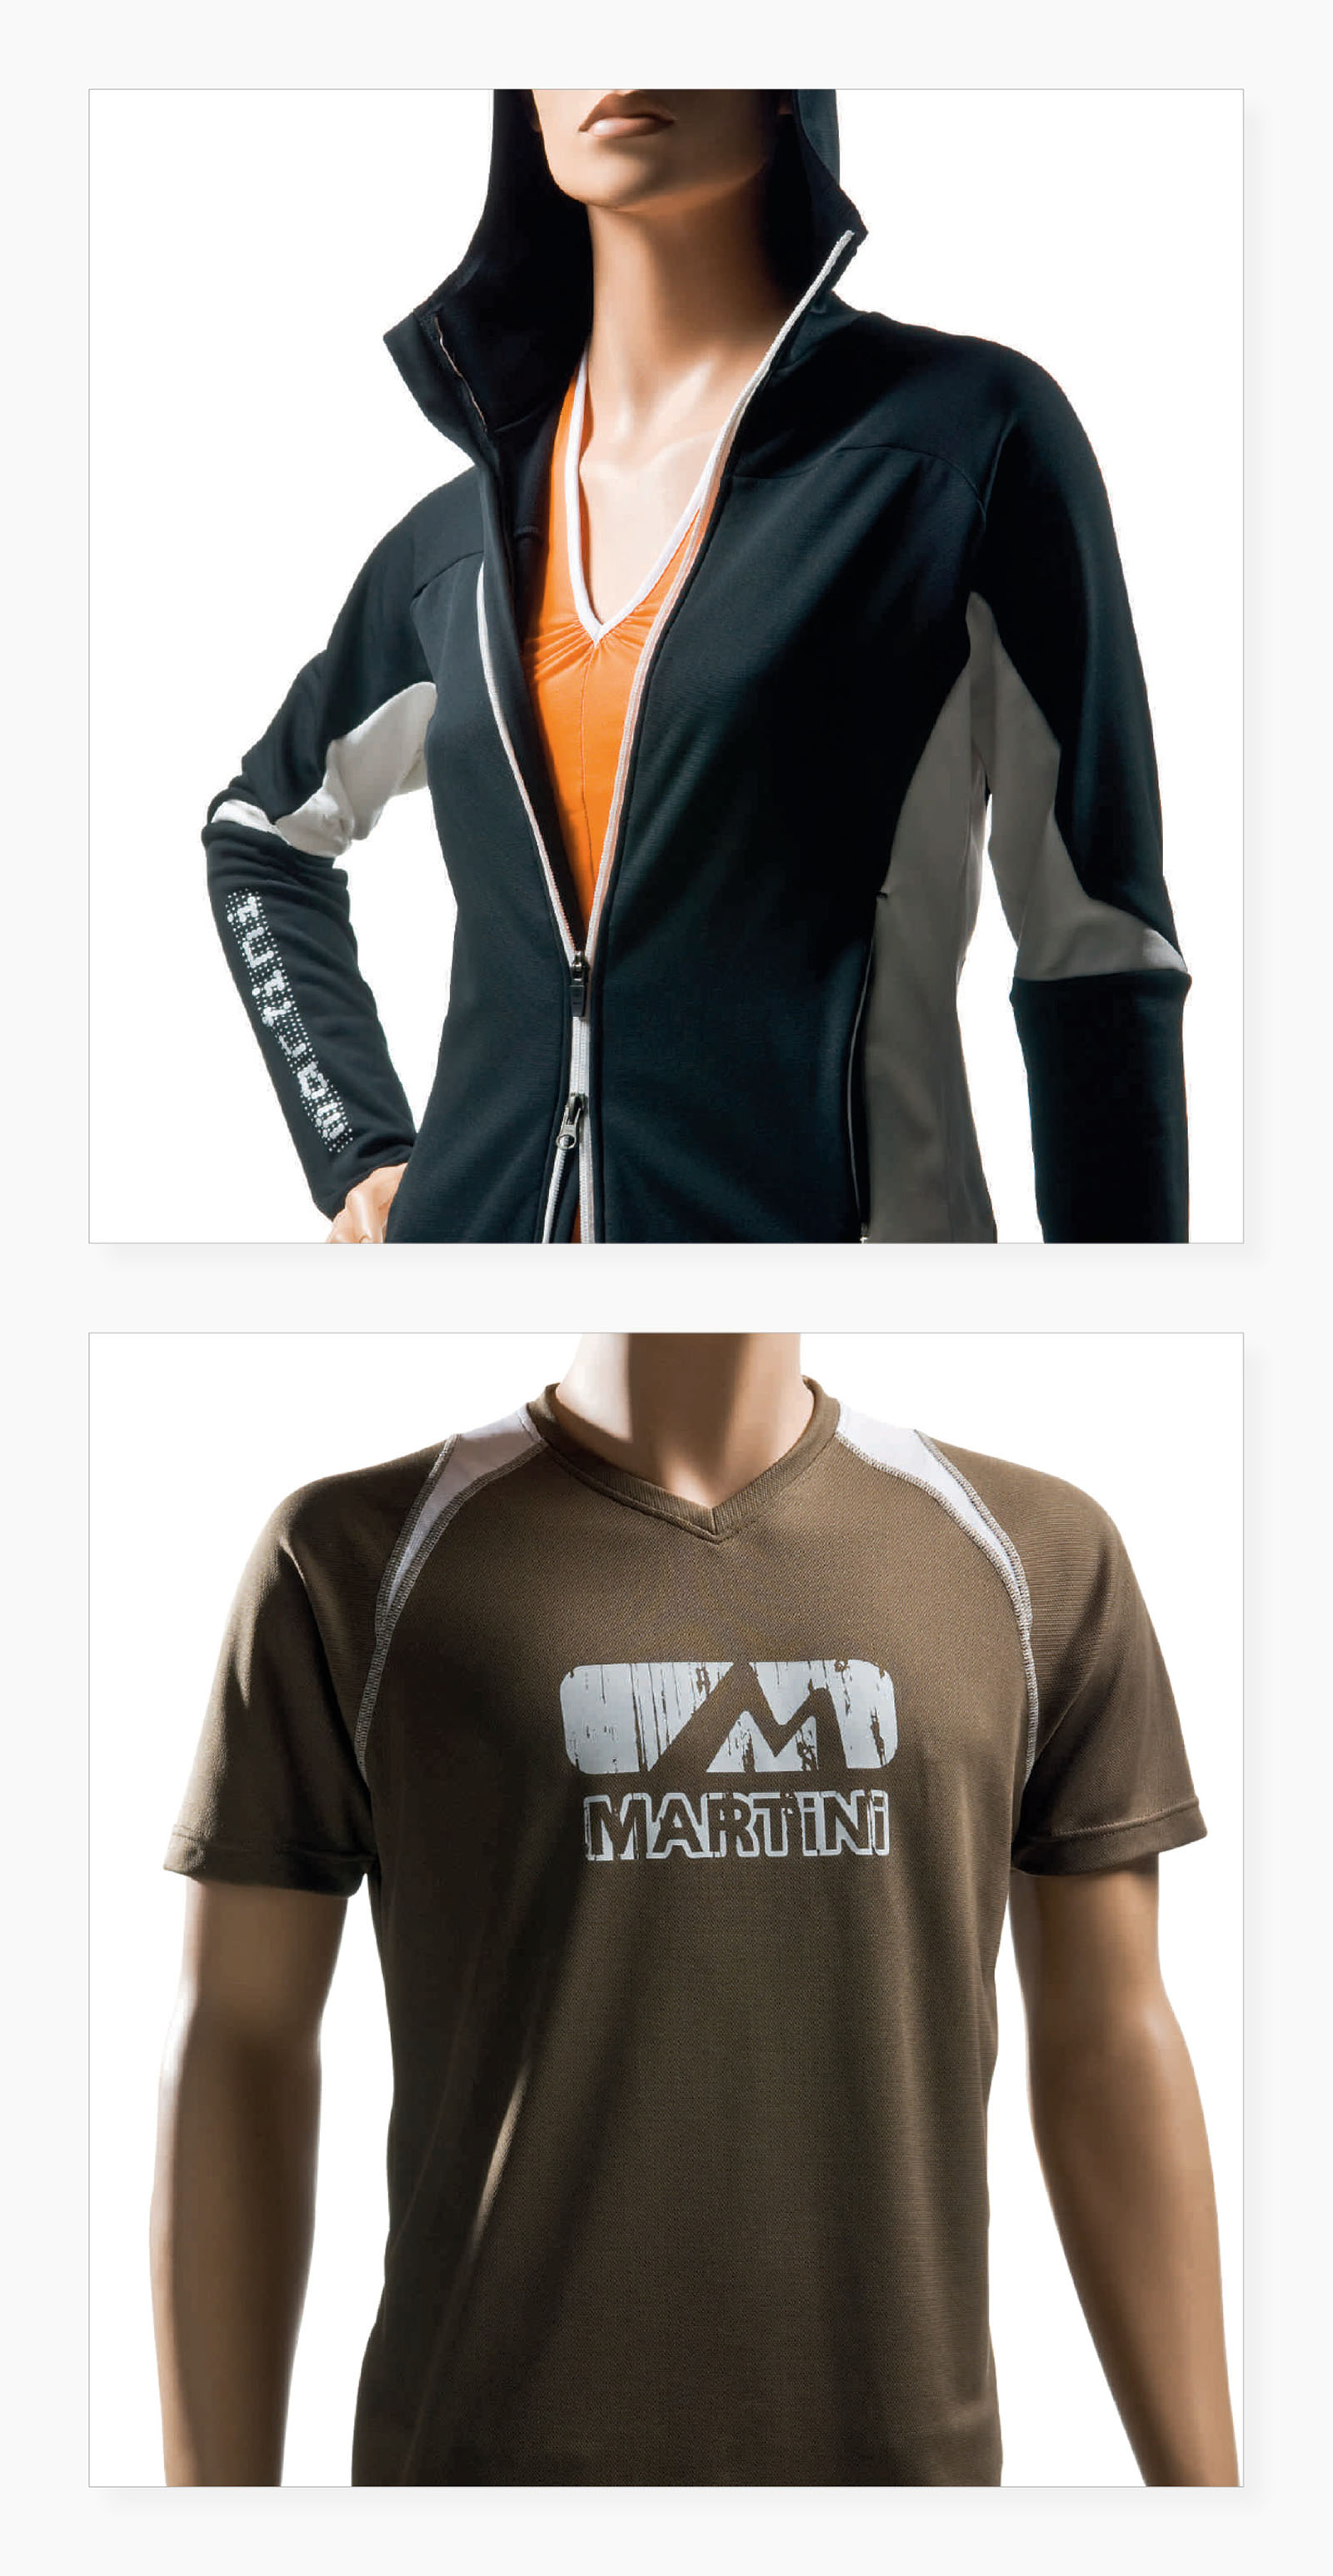 Graphik-Elemente ("Artworks") für Sport-Mode im Outdoor-Bereich, Sommer – Unisex-Jacke, Herren-Shirt